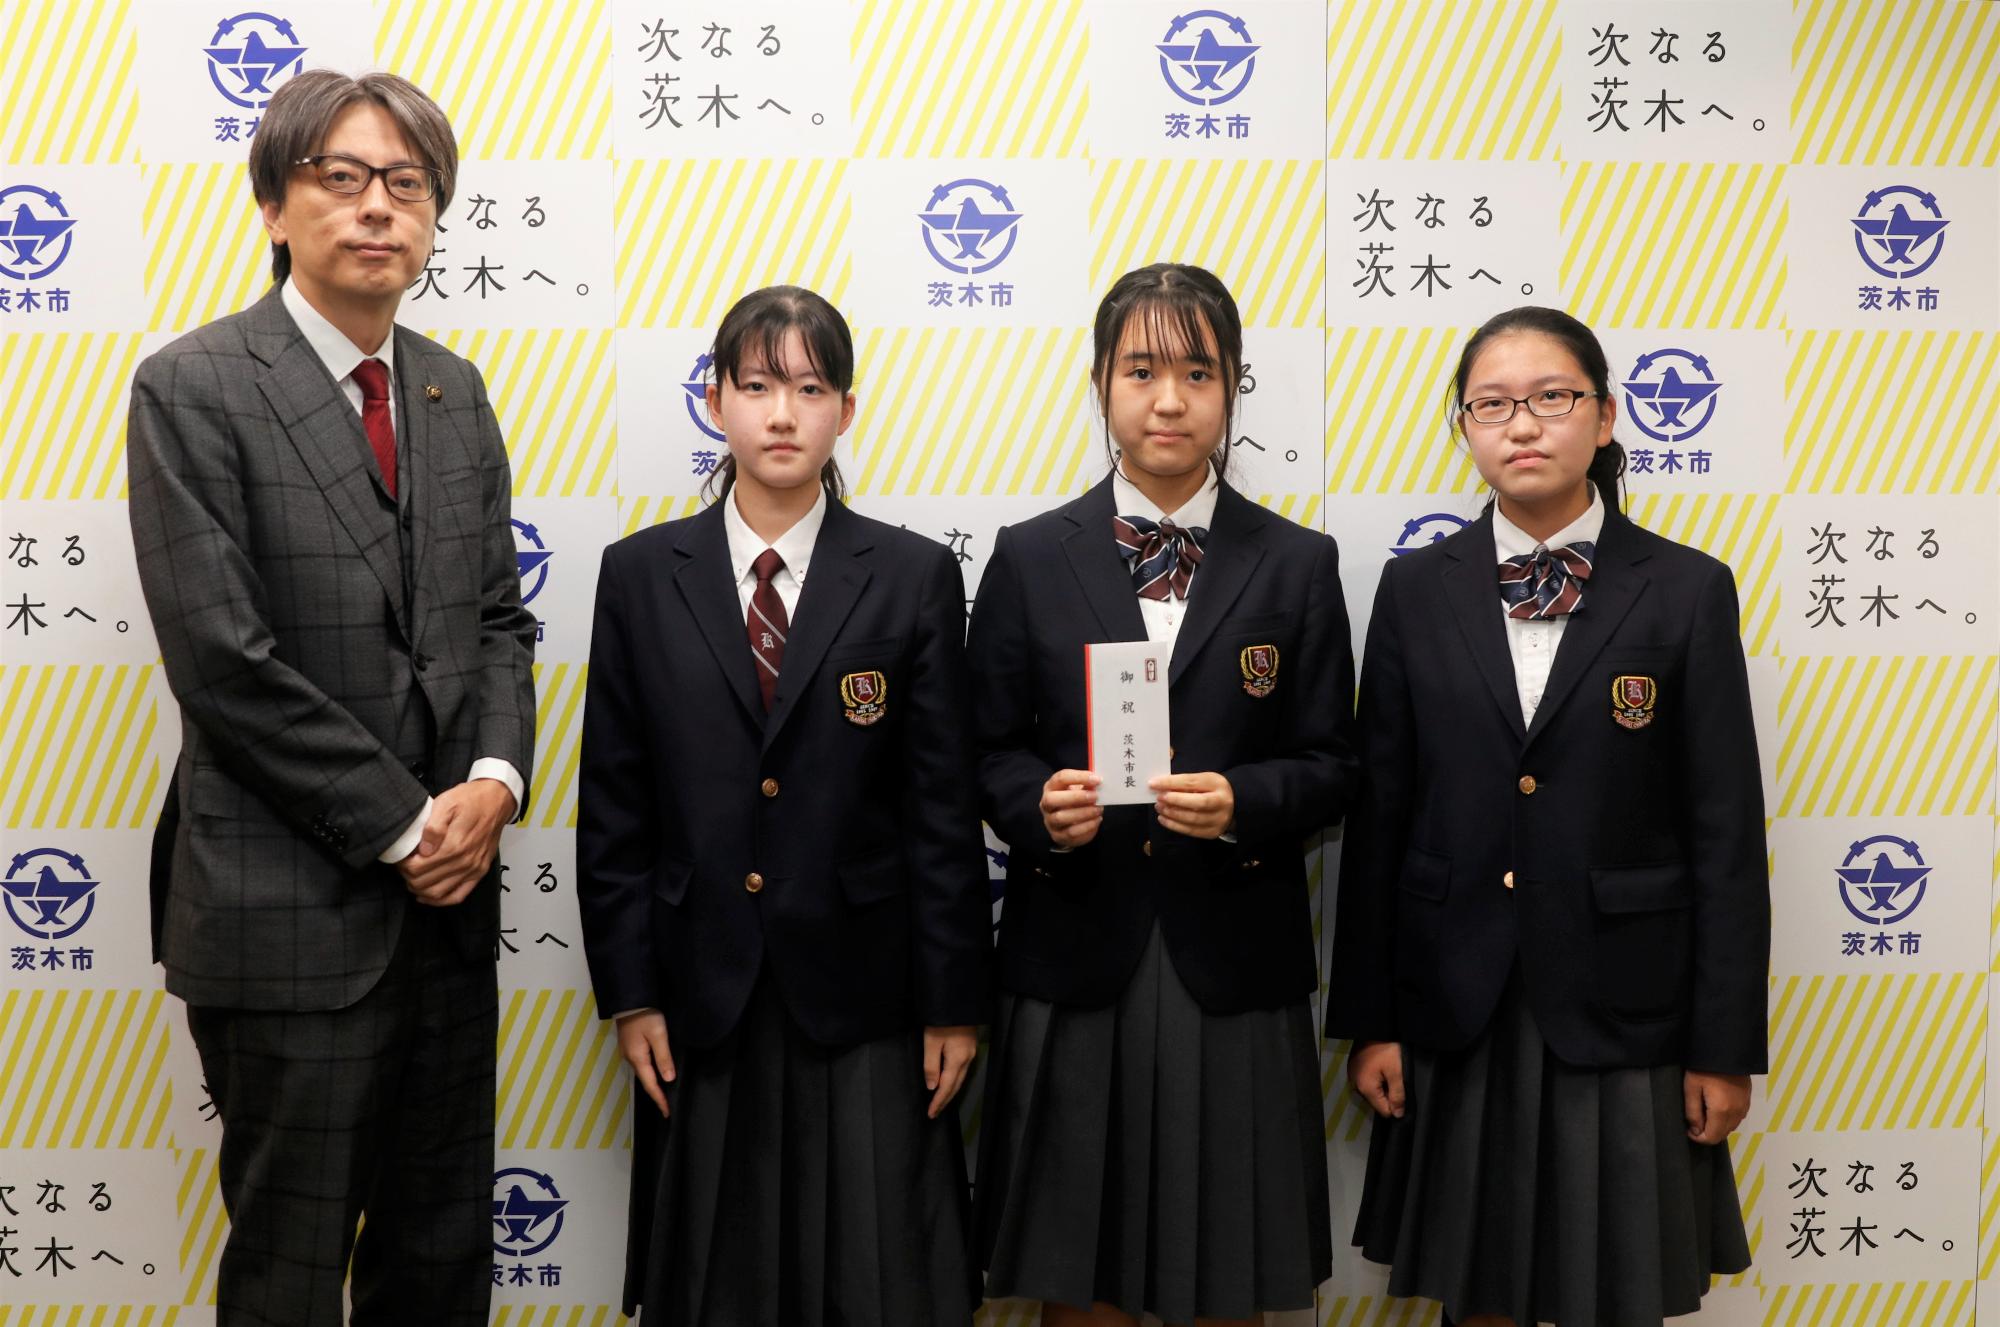 関西大倉高等学校、囲碁将棋部の皆さんと市長の写真